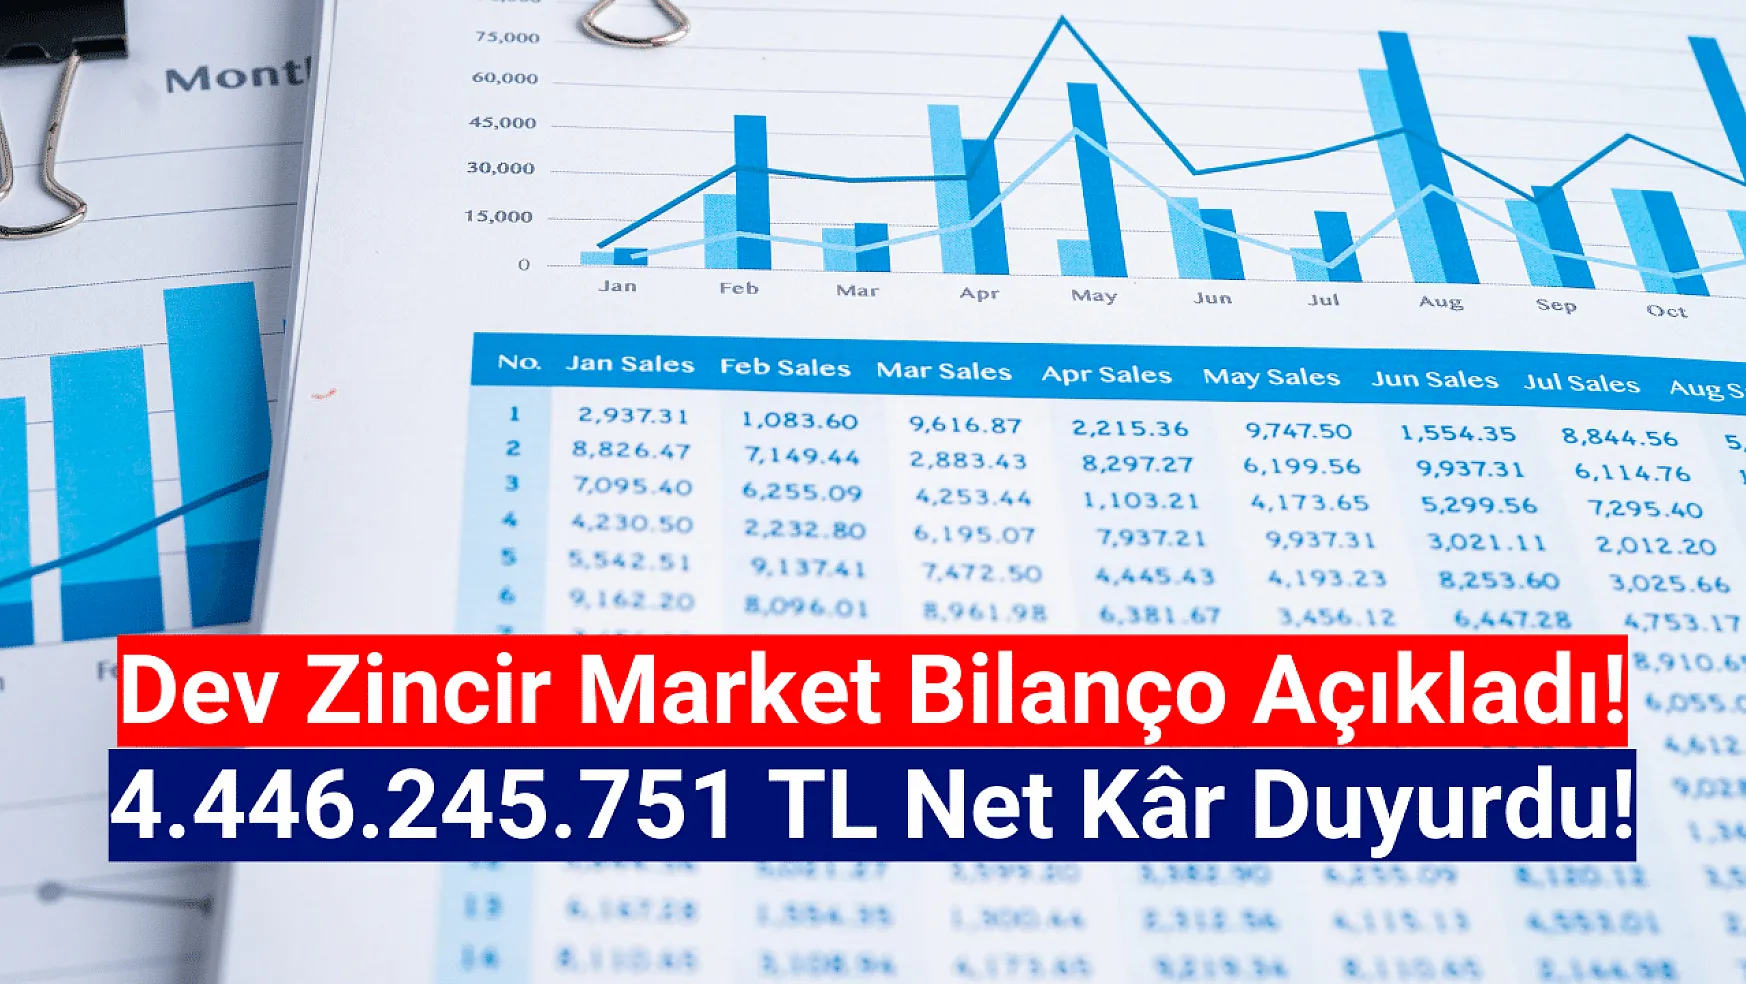 Dev zincir market 4.446.245.751 TL net kâr açıkladı!